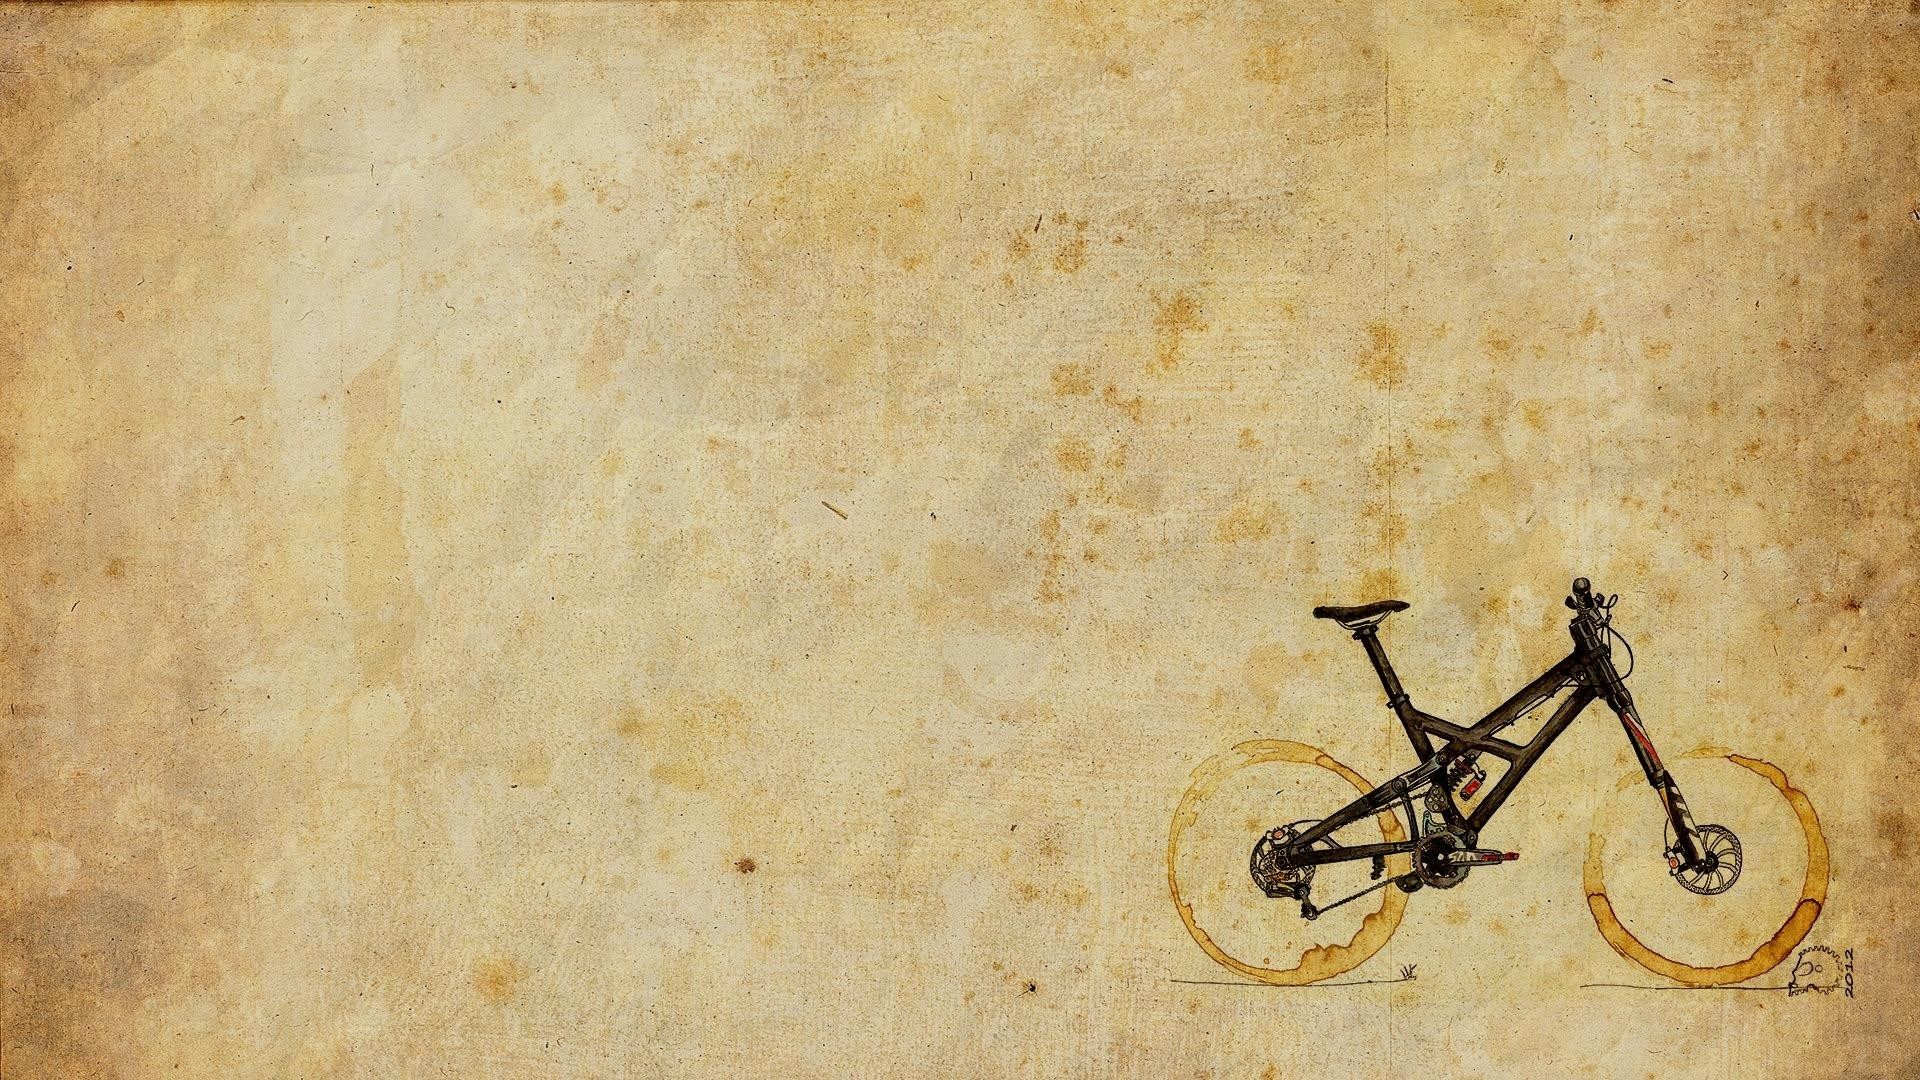 mountain-bike-art-hd-wallpaper - Magic4Walls.com